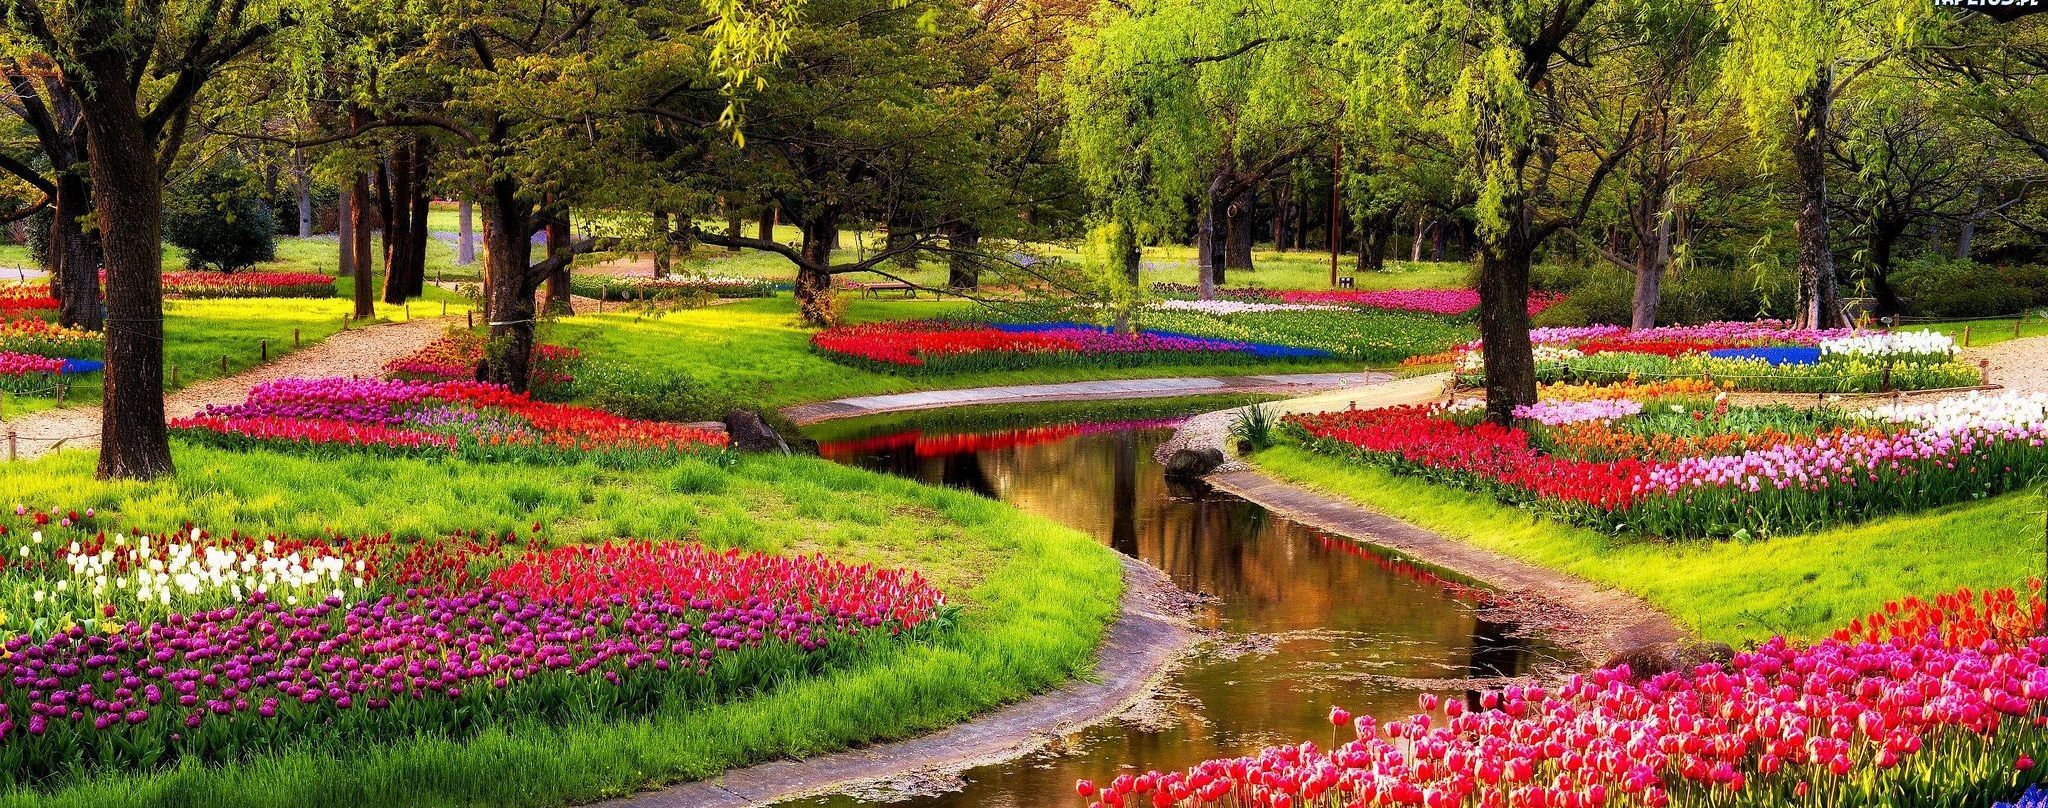 Королівський "Сад Європи" з тисячами тюльпанів відкриється неподалік Амстердама